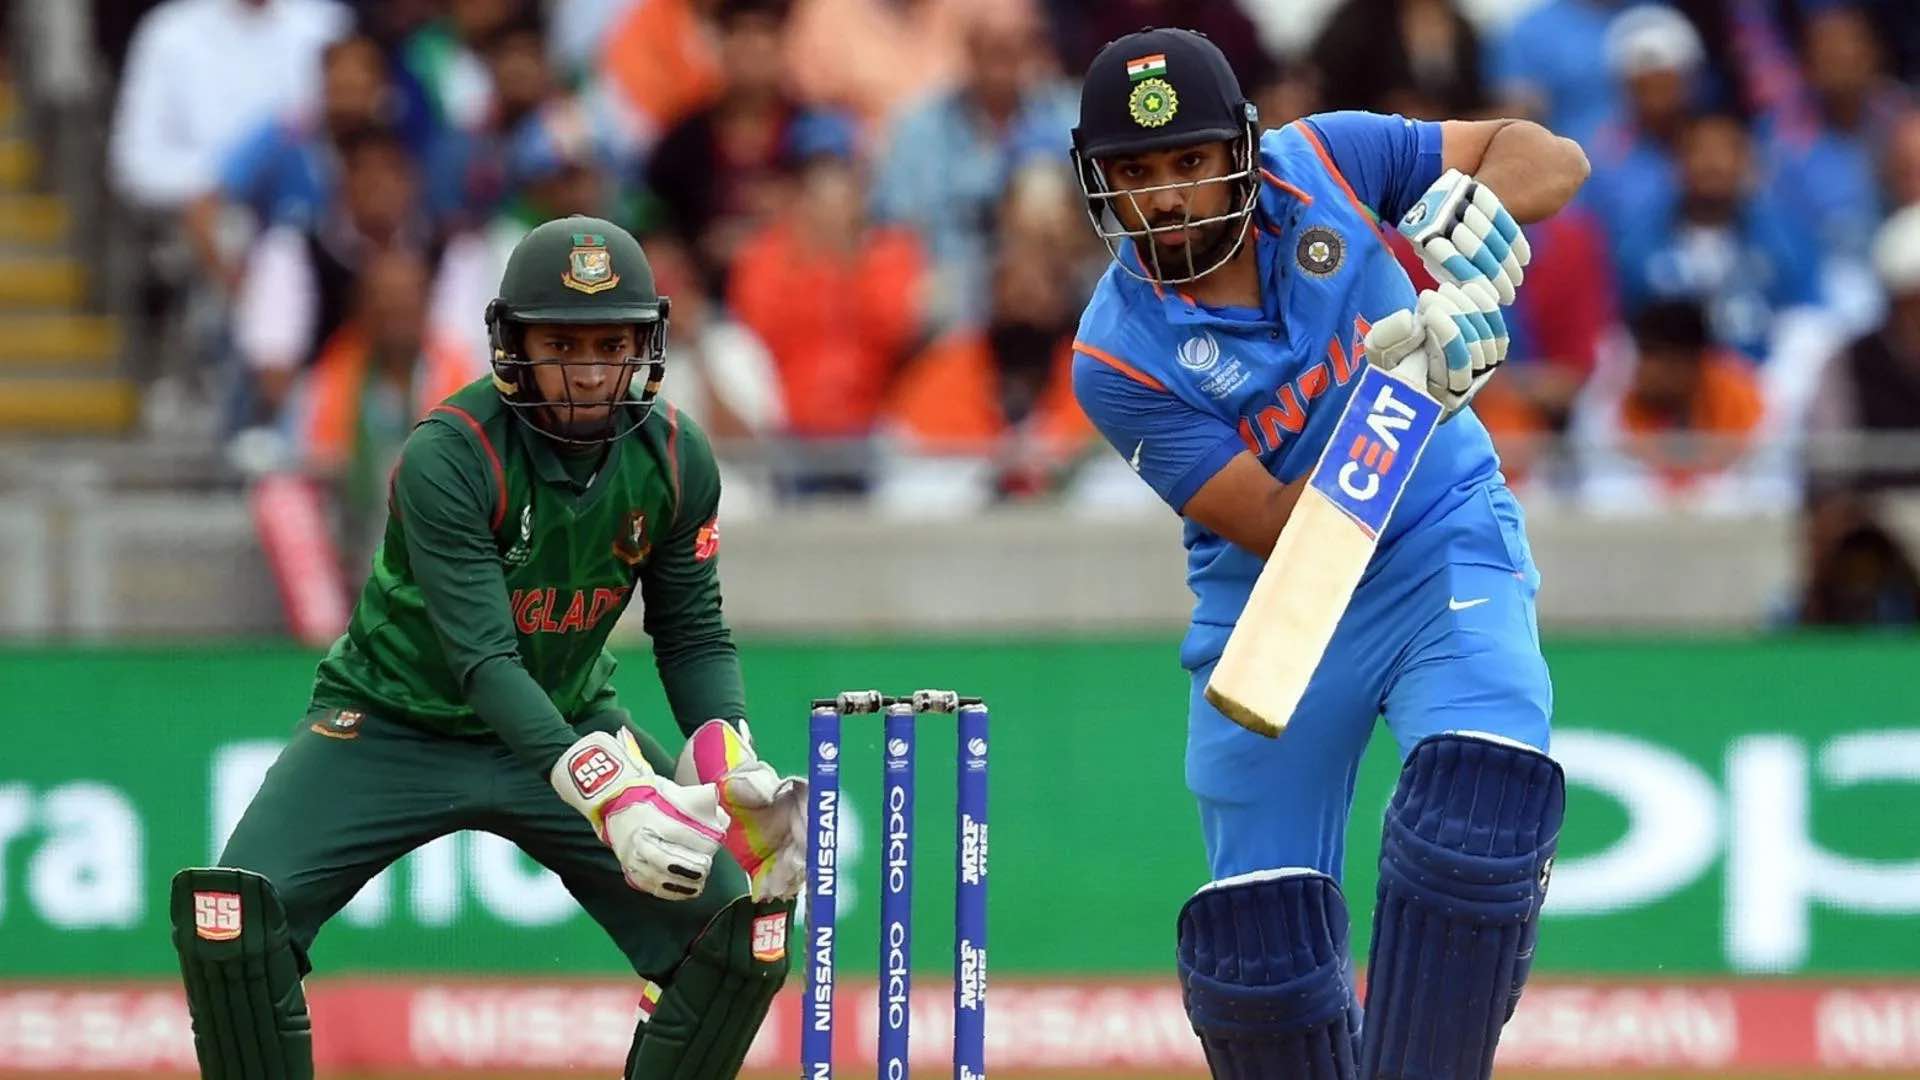 India vs Bangladesh ODI Records and Stats at the Shere Bangla National Stadium, Dhaka